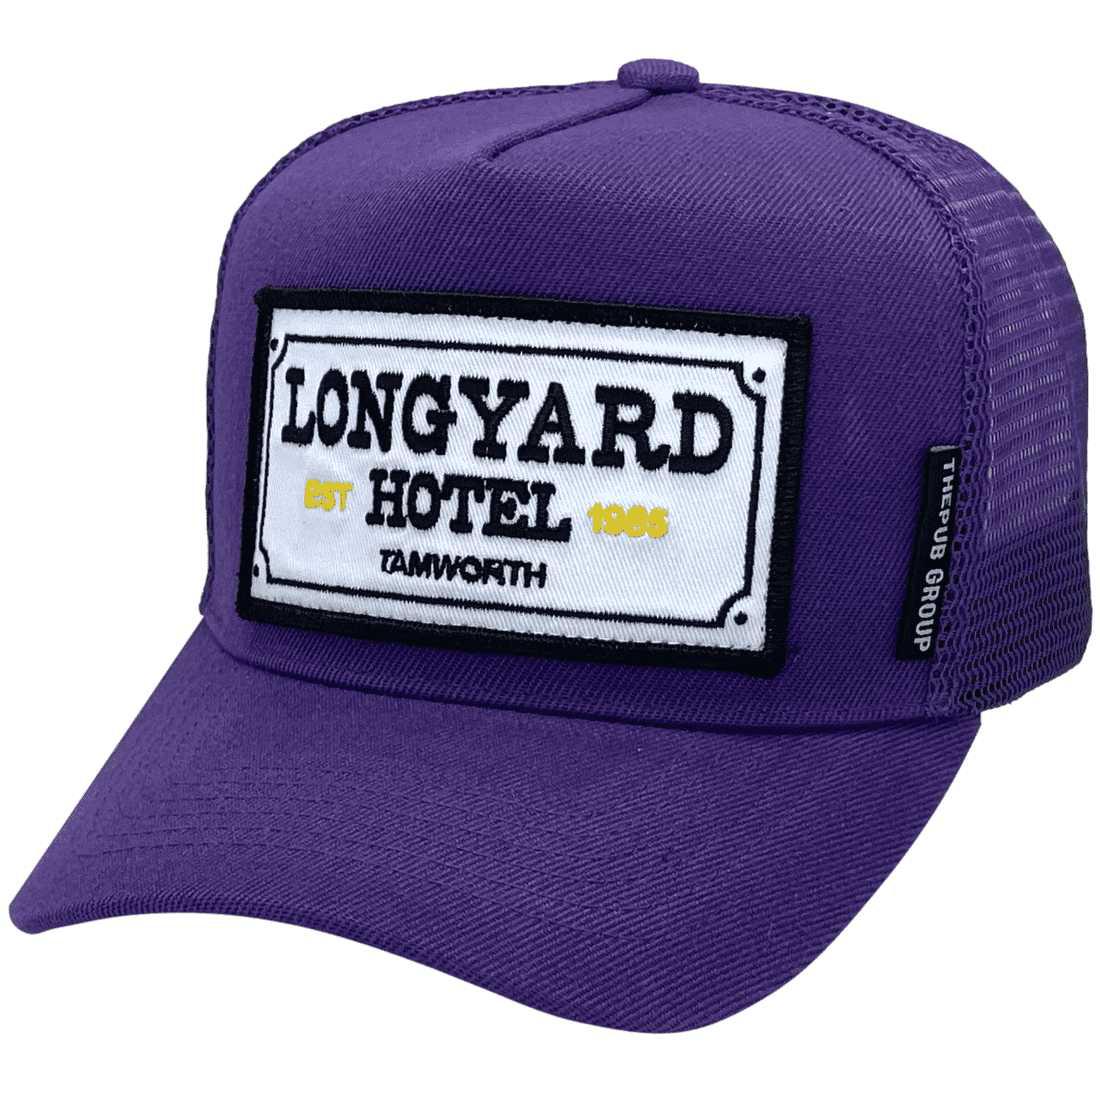 Longyard Hotel Tamworth NSW HP Original Basic Aussie Trucker Hat with optional NO sidebands exclusive Aussie Head Fit